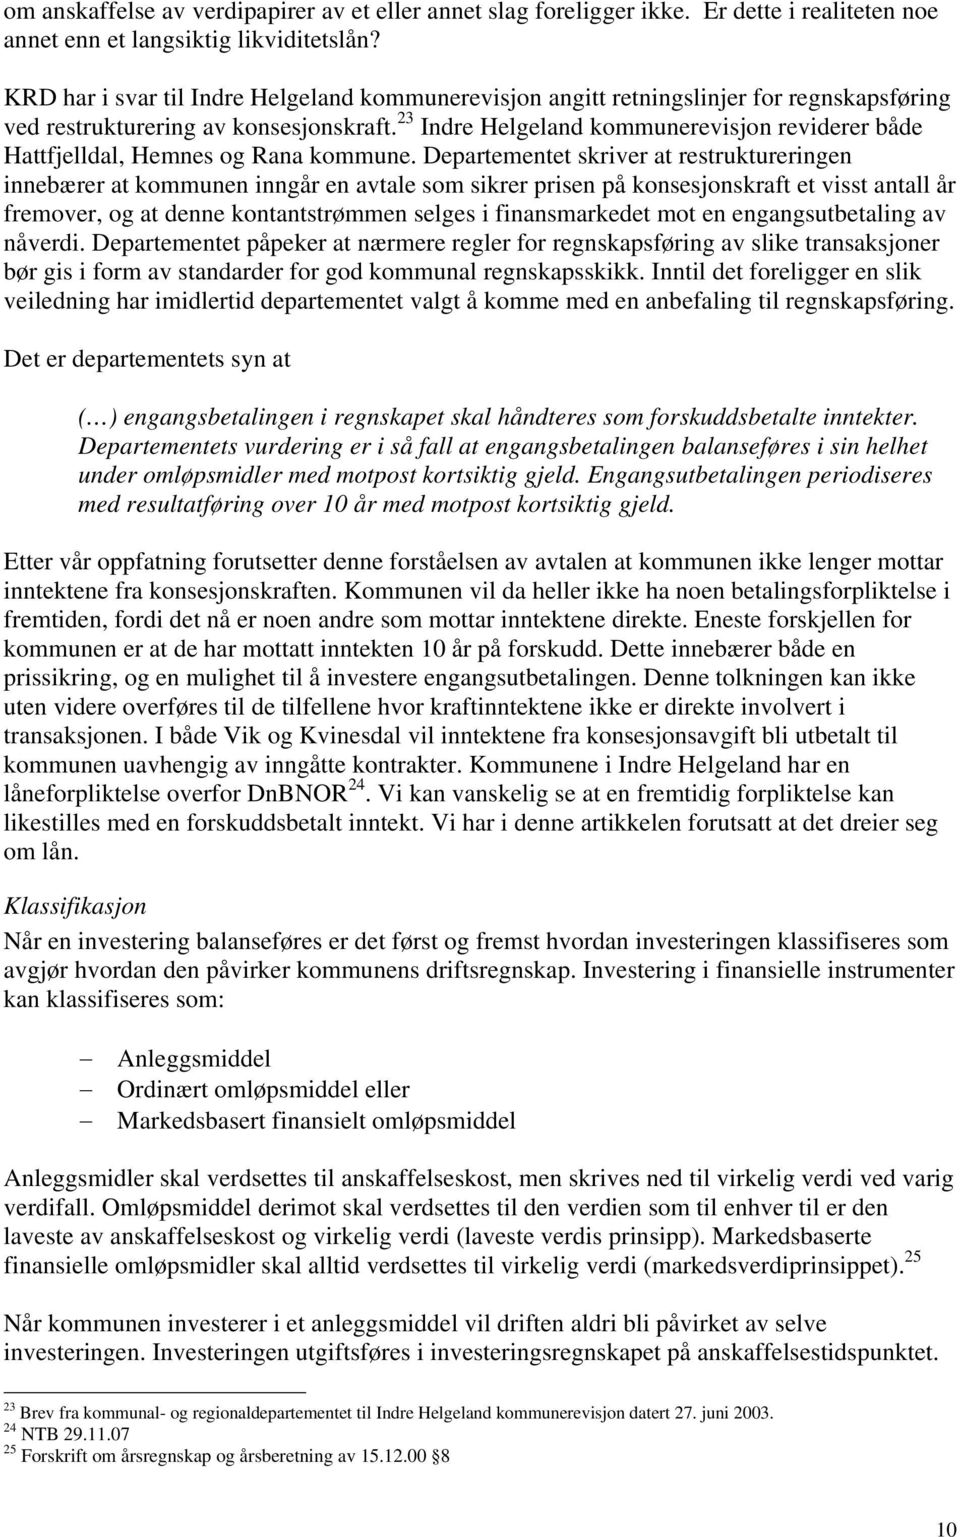 23 Indre Helgeland kommunerevisjon reviderer både Hattfjelldal, Hemnes og Rana kommune.